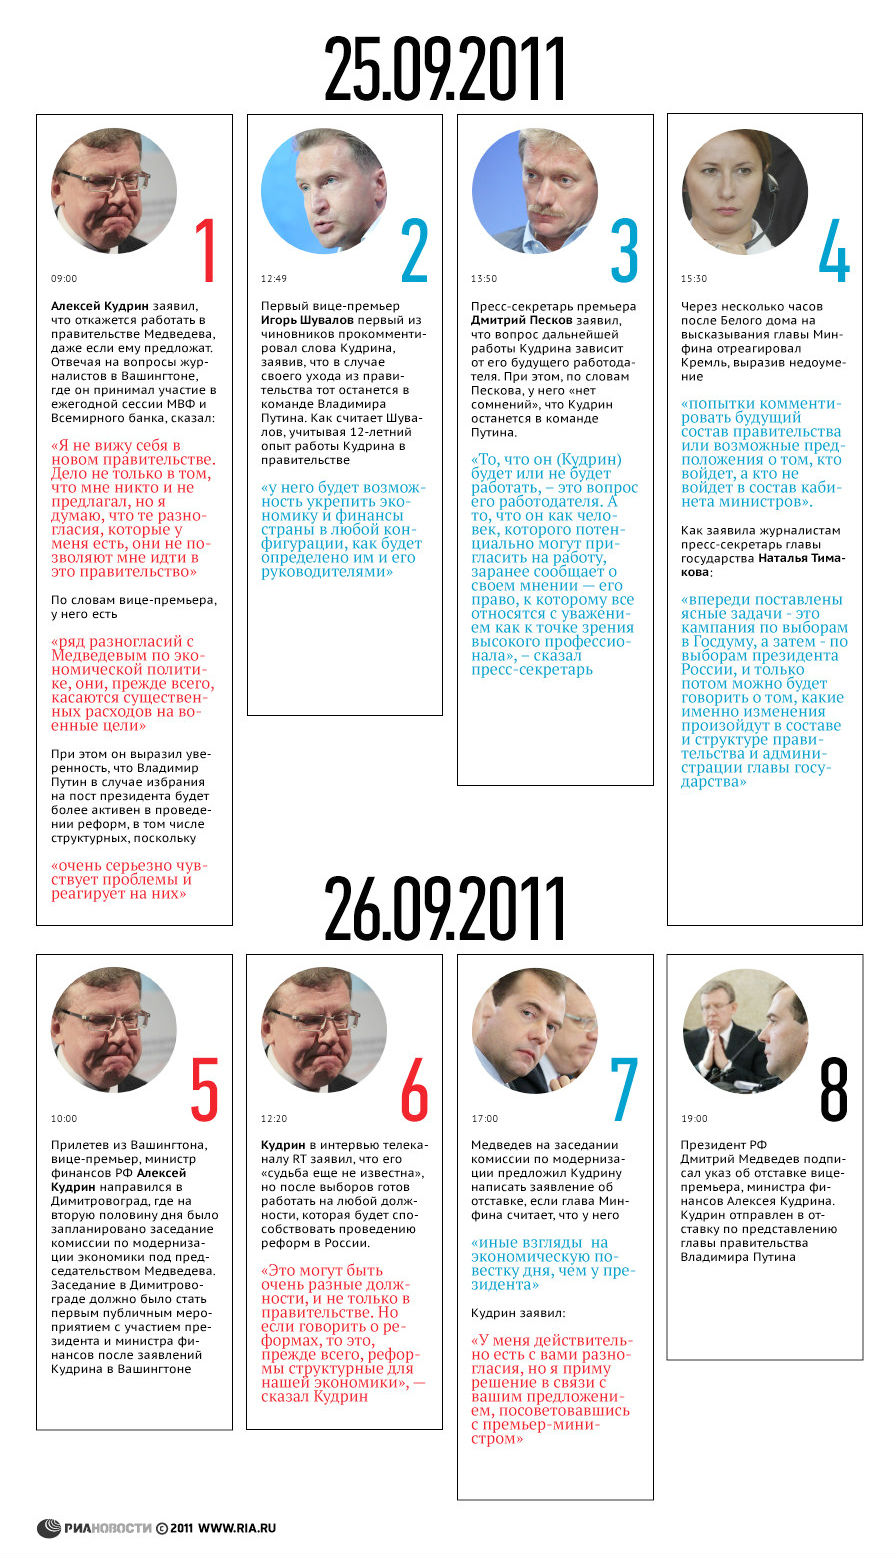 Как Россия осталась без министра финансов (фото 1)